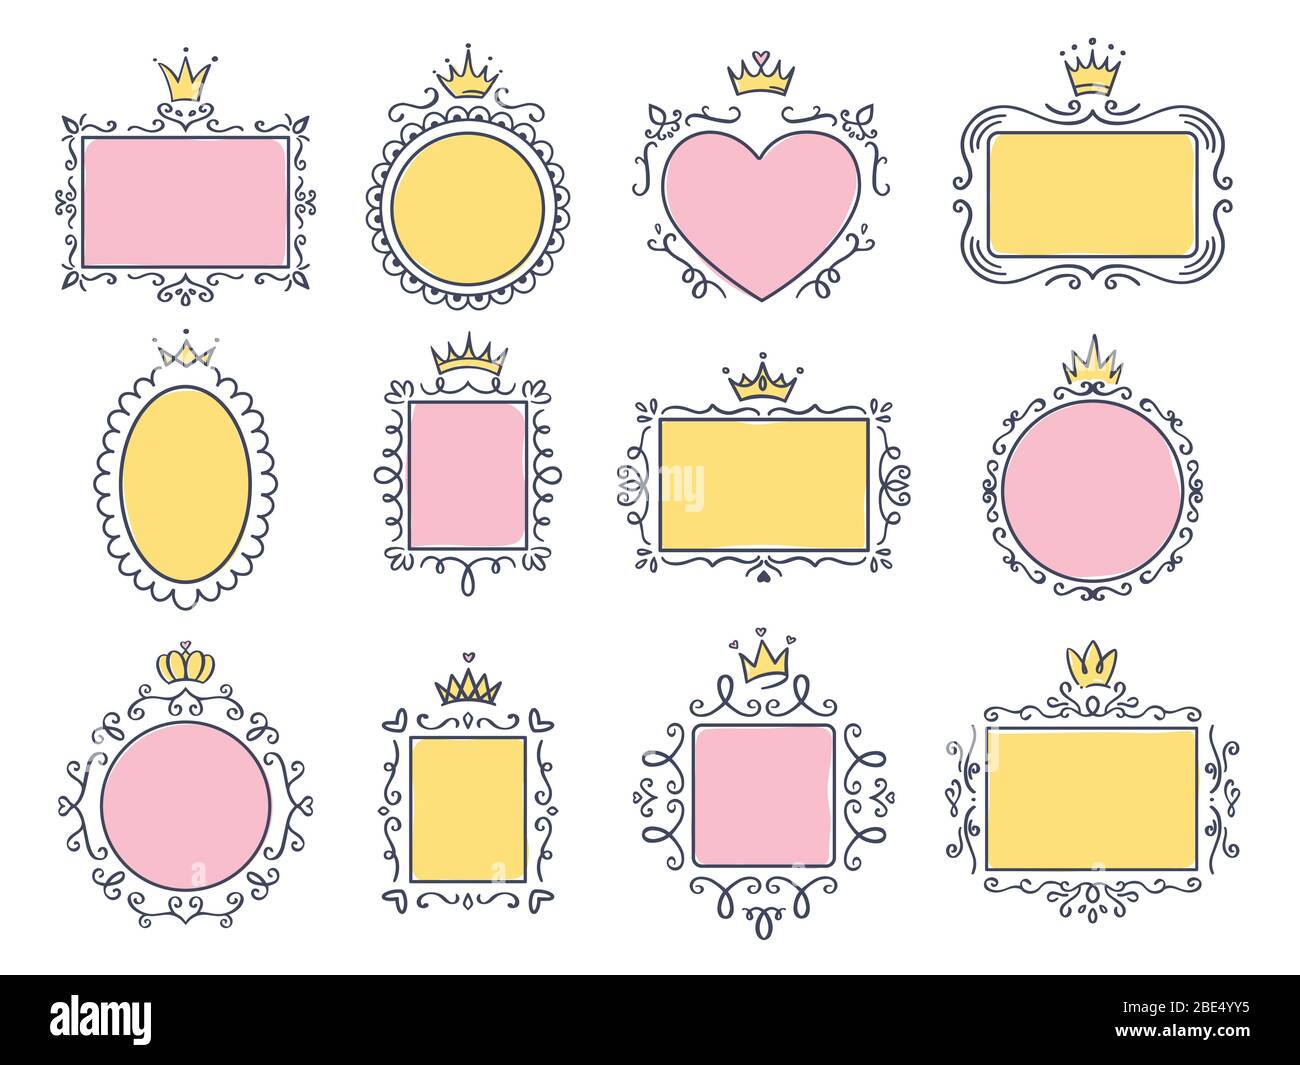 Niedliche Prinzessrahmen. Rosa Spiegelrahmen mit Prinzessinnen Krone, majestätische Hand gezeichnete Text Grenzen und Royal Doodle Rahmen Vektor-Set. Sammlung von leeren Stock Vektor